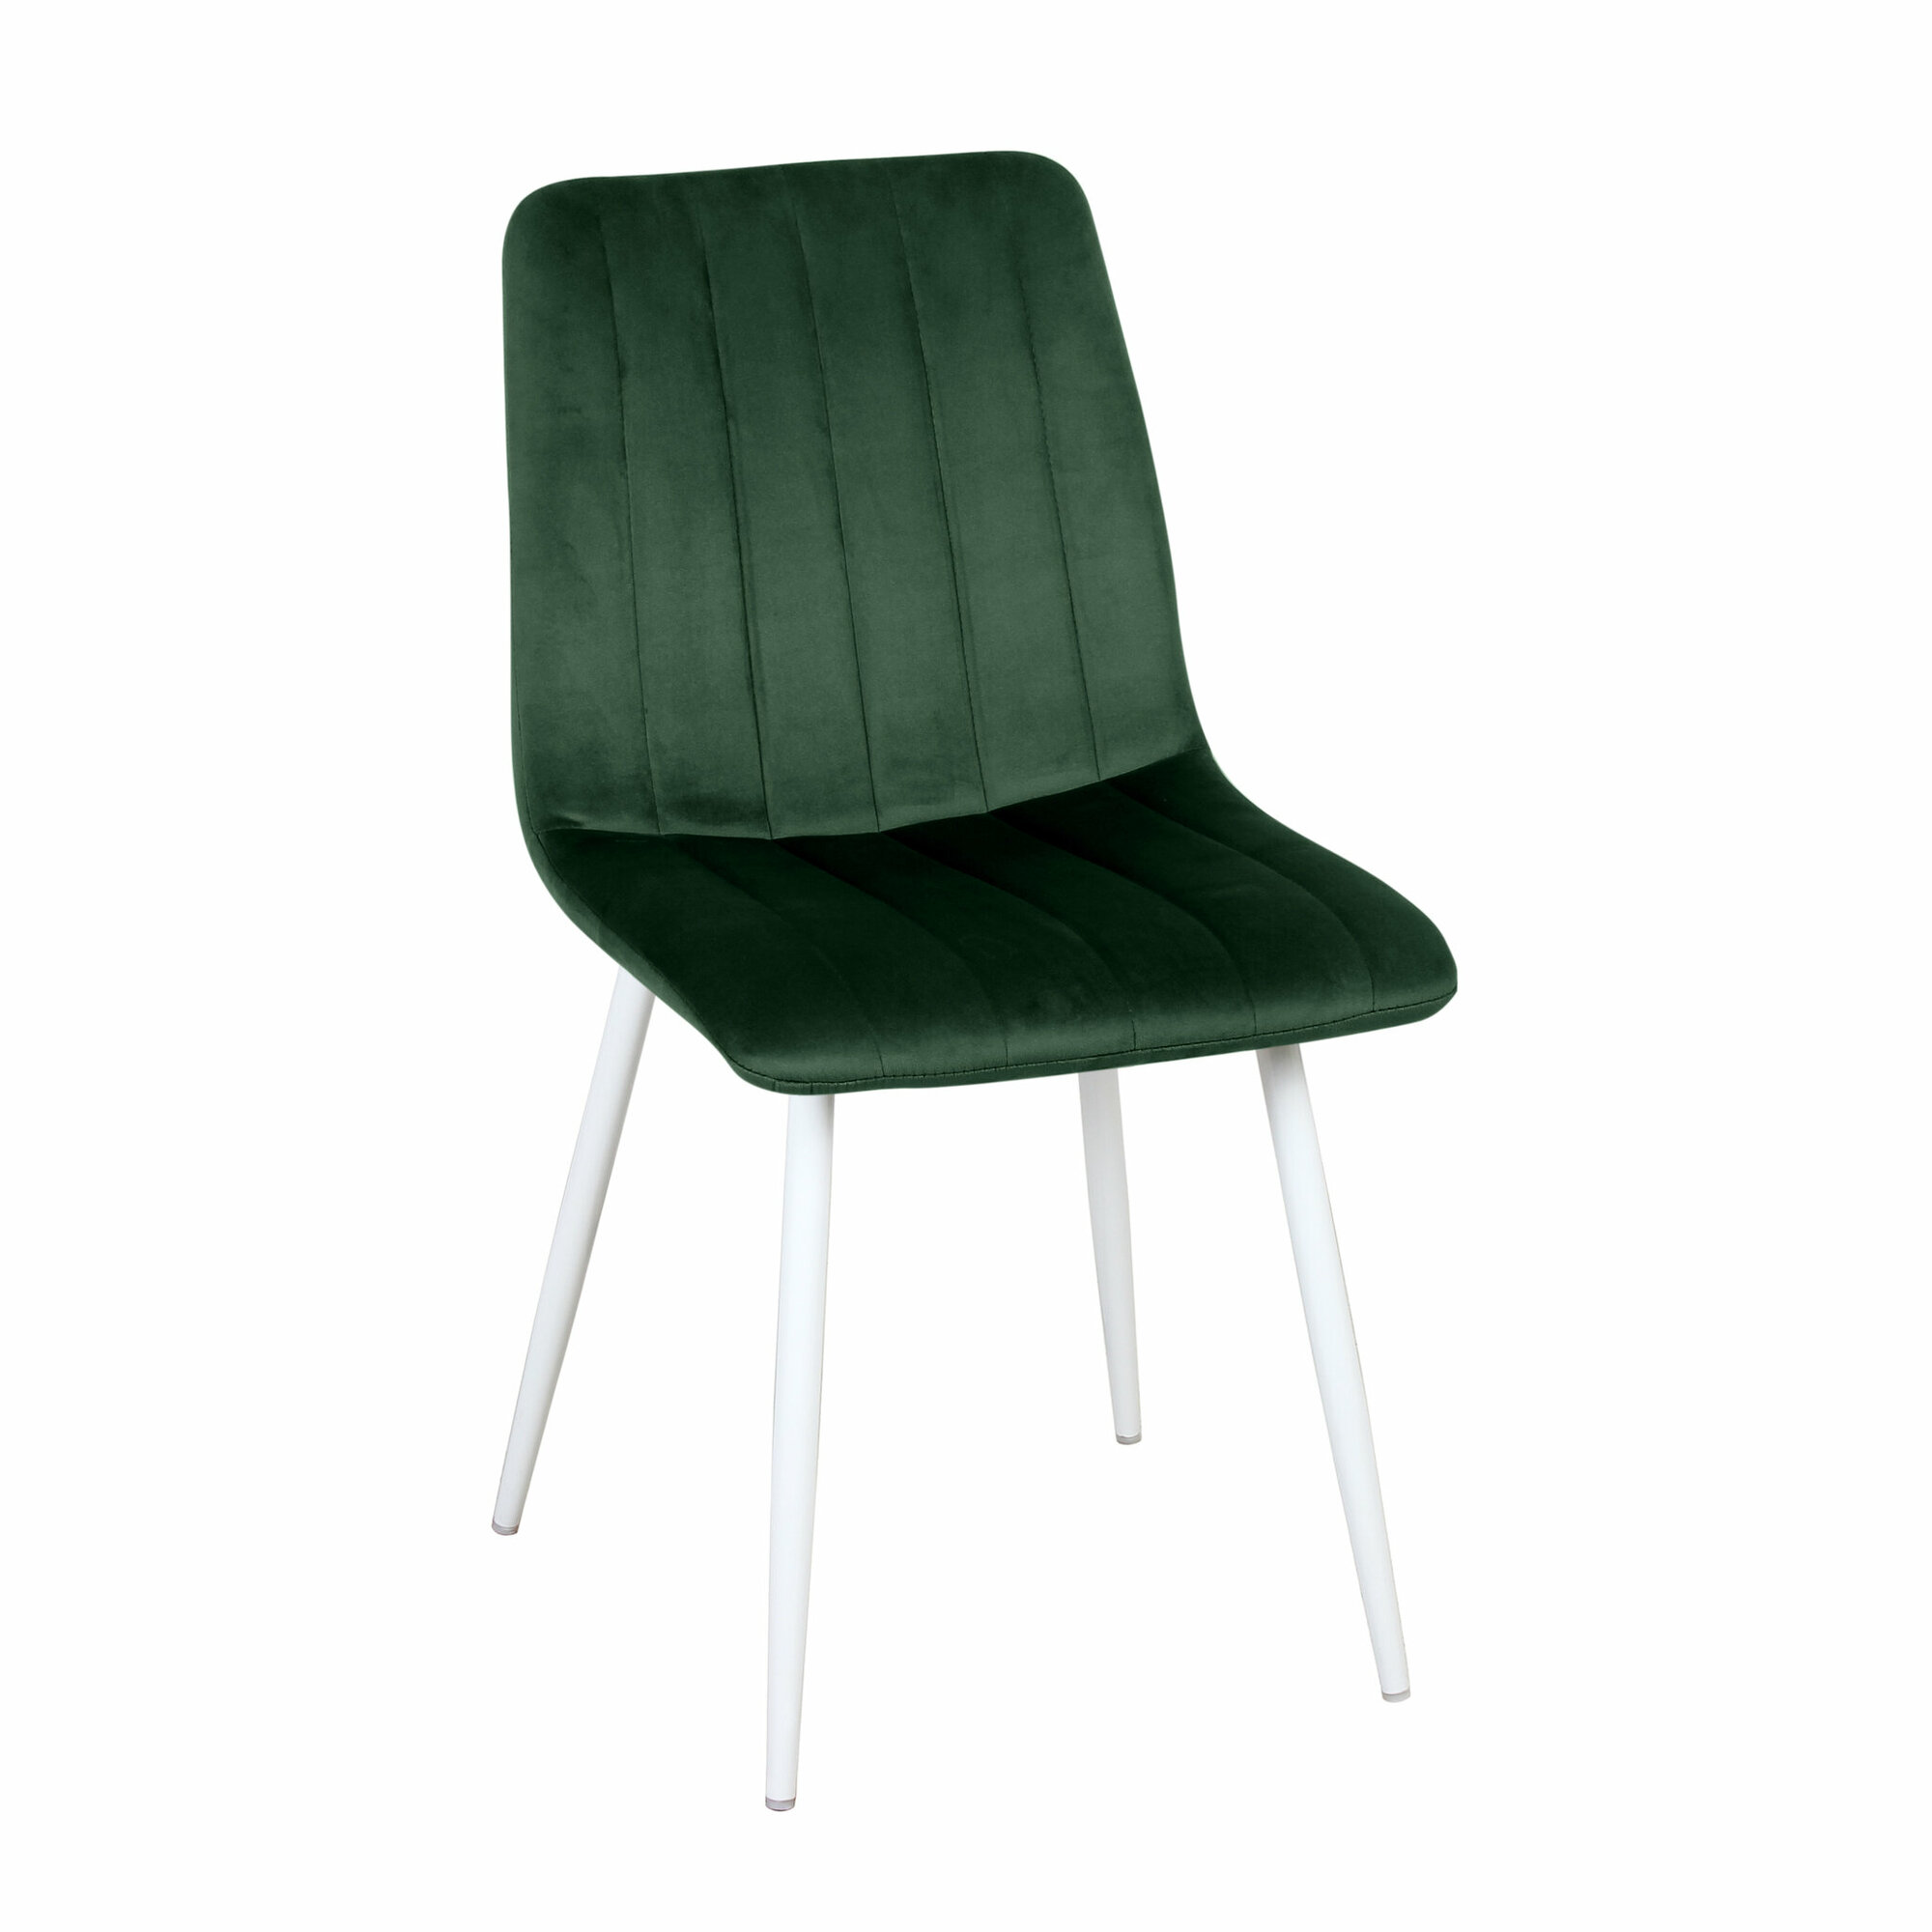 Стул обеденный ecoline Дублин РФ-241 цвет сиденья темно-зеленый, ножки белые